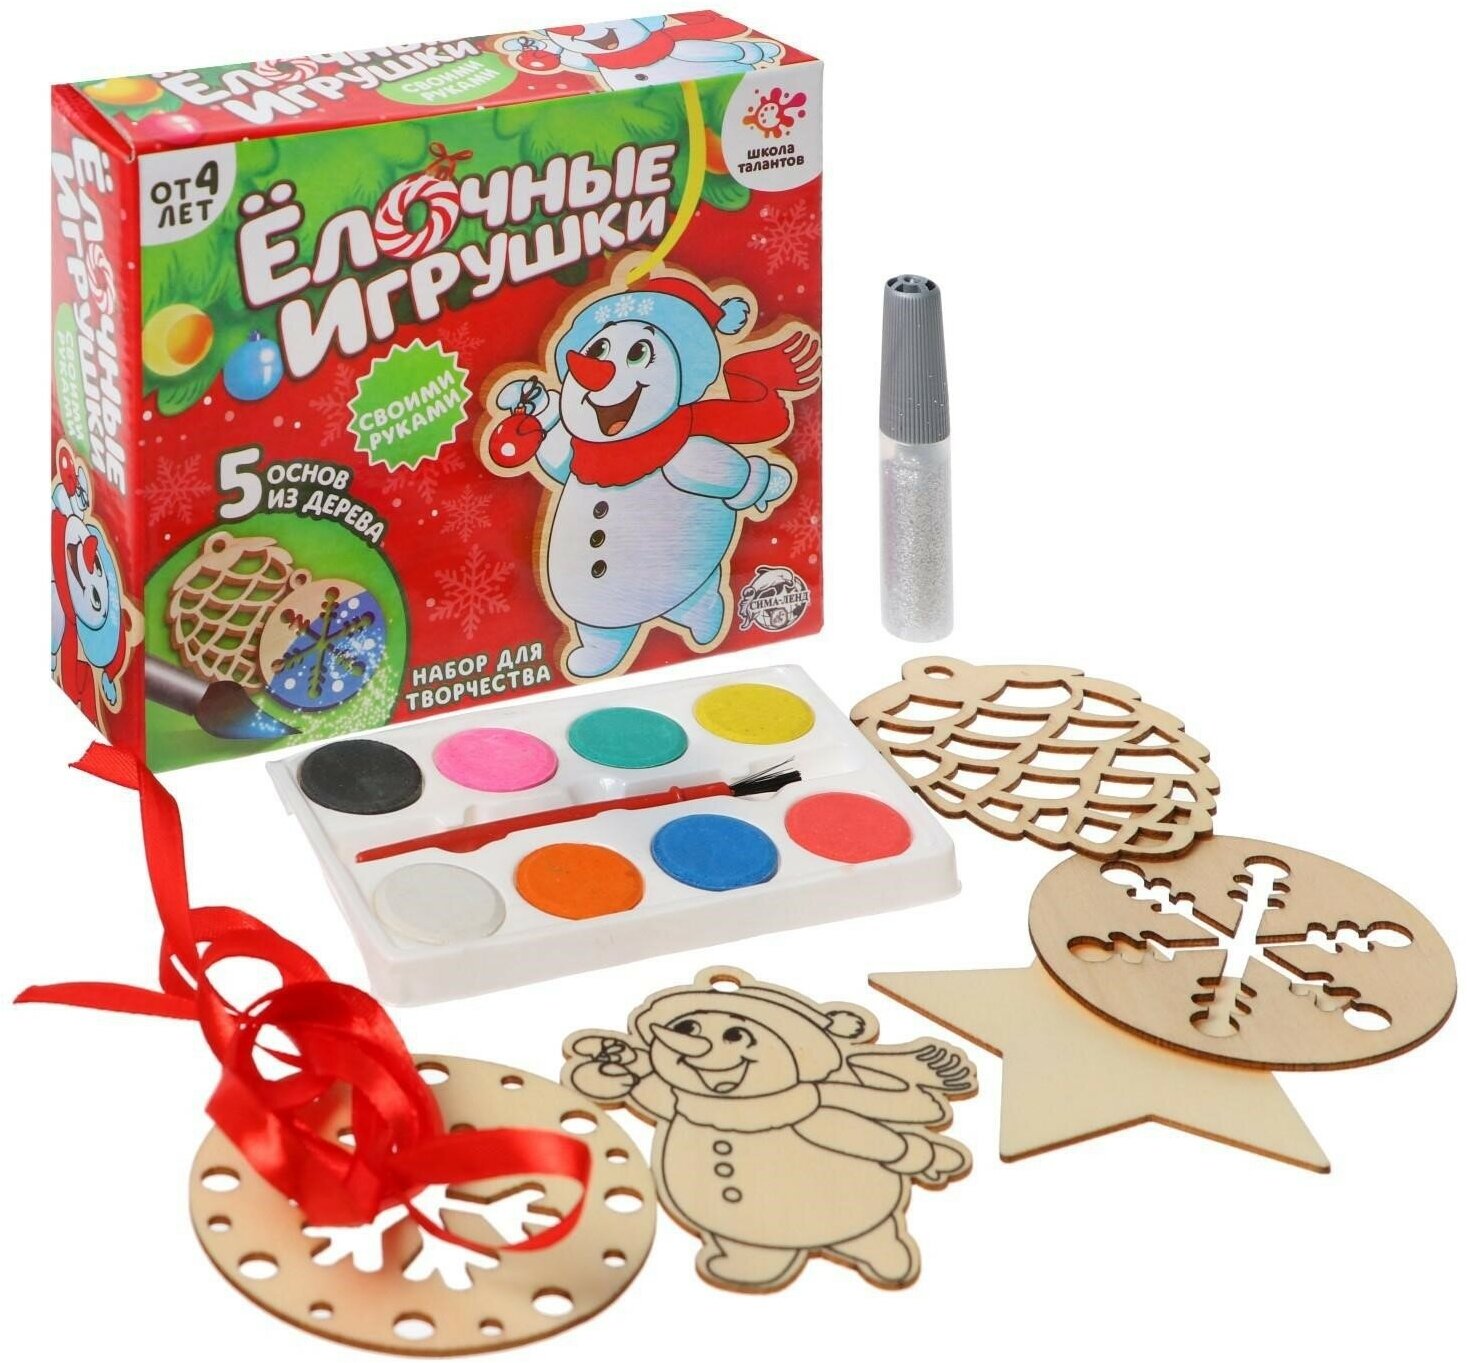 Набор для творчества "Ёлочные игрушки", своими руками, 5 основ из дерева, для детей и малышей